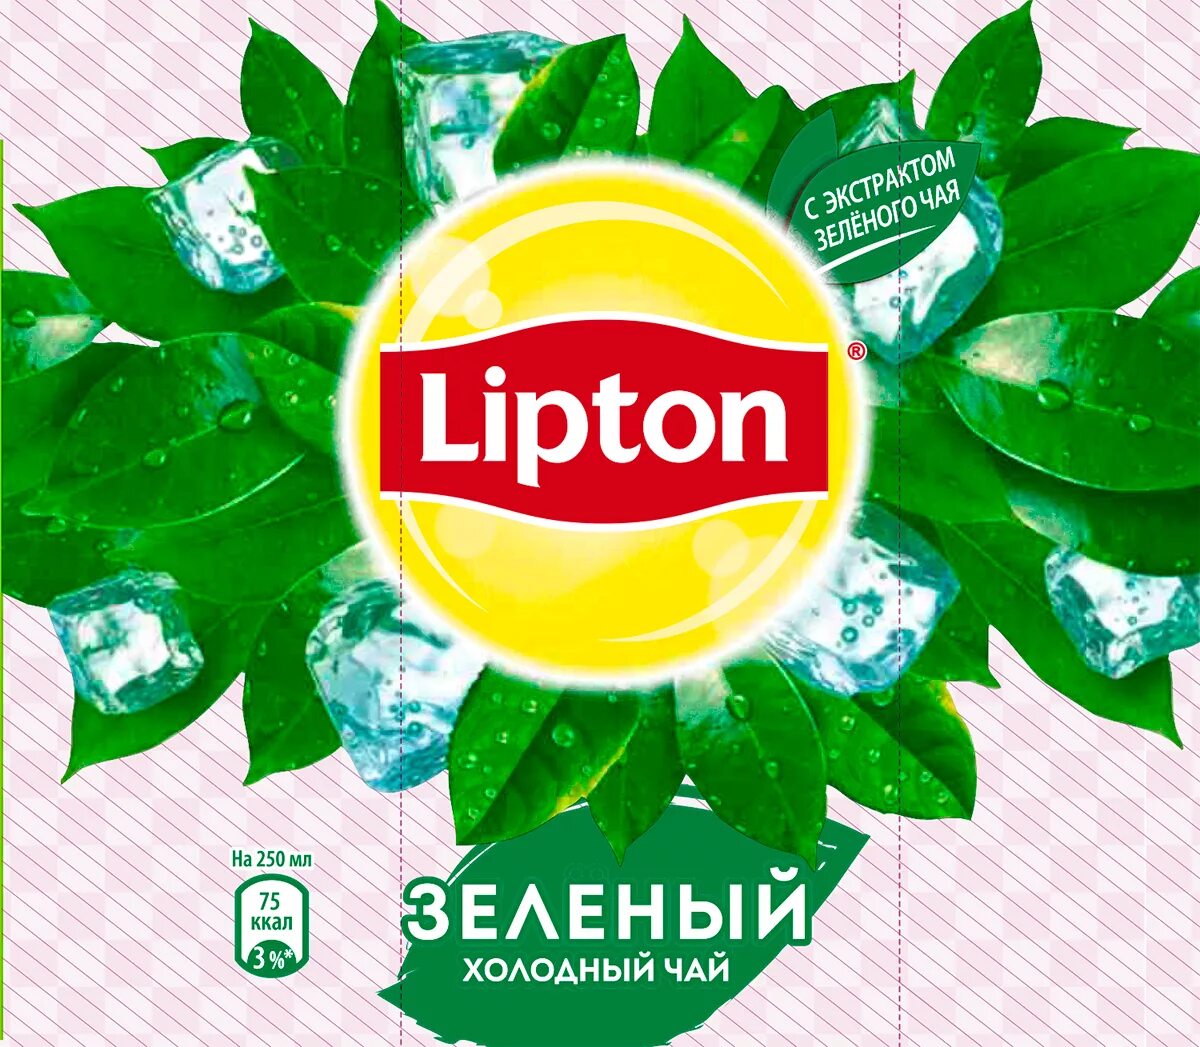 Без липтона. Холодный зеленый чай Липтон этикетка. Холодный чай Липтон логотип. Надпись Липтон зеленый чай. Этикетка Липтон холодный чай.